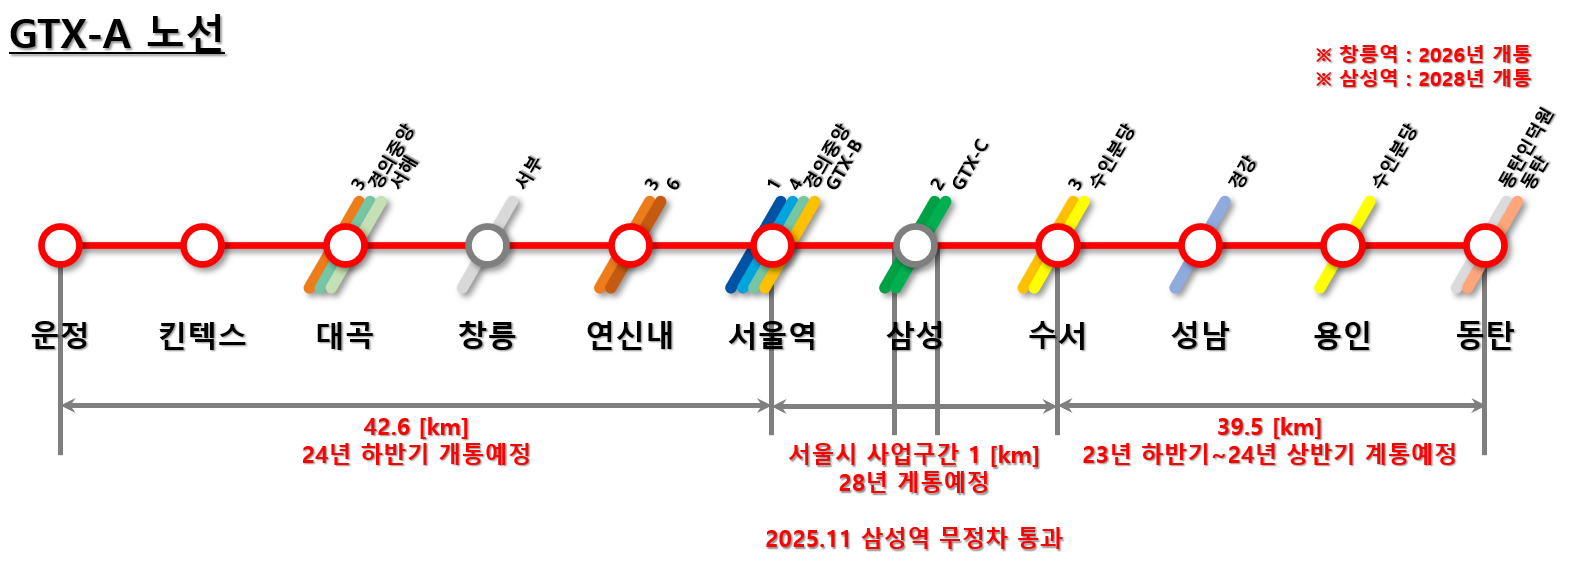 GTX-A 구간별 개통 시기를 나타낸 사진입니다.
수서에서 동탄구간이 가장 먼저 개통하는 구간으로 24년 상반기로 예정되어있습니다.

운정역에서 서울역은 24년 하반기 개통 예정입니다.

서울역에서 수서 구간은 2025년 삼성역을 무정차 통과하면서 가능 할 것으로 보입니다.

창릉역은 2026년 개통&#44; 삼성역은 최종적으로 2028년 영동대로 지하문화복합단지와 함께 개통됩니다.